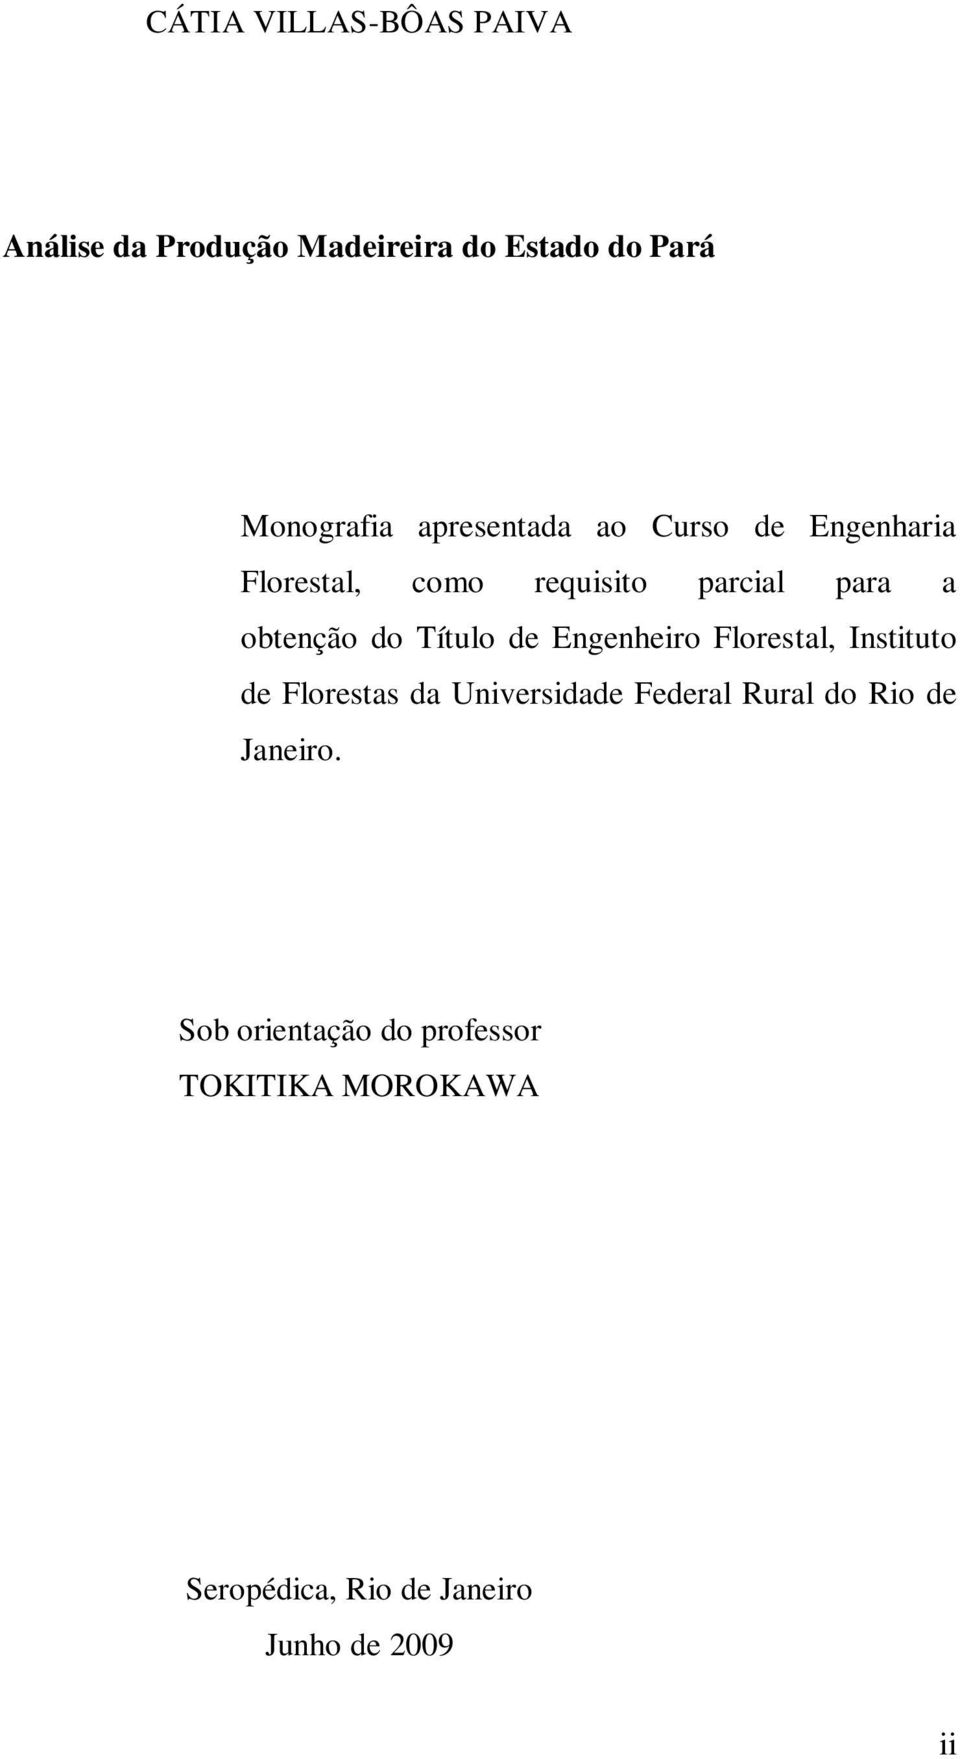 Título de Engenheiro Florestal, Instituto de Florestas da Universidade Federal Rural do Rio